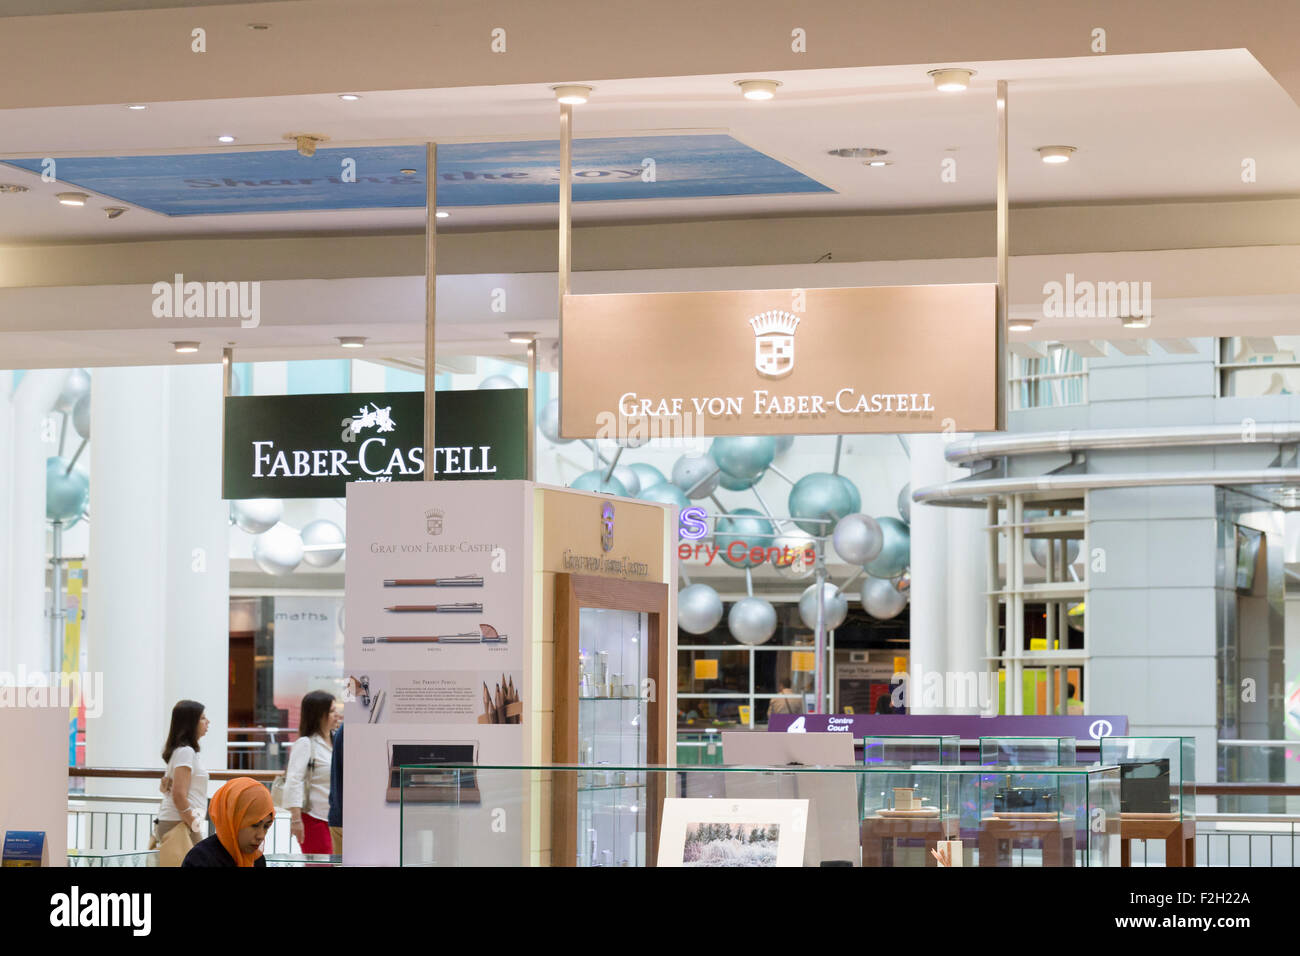 Graf von Faber Castell shop Stock Photo